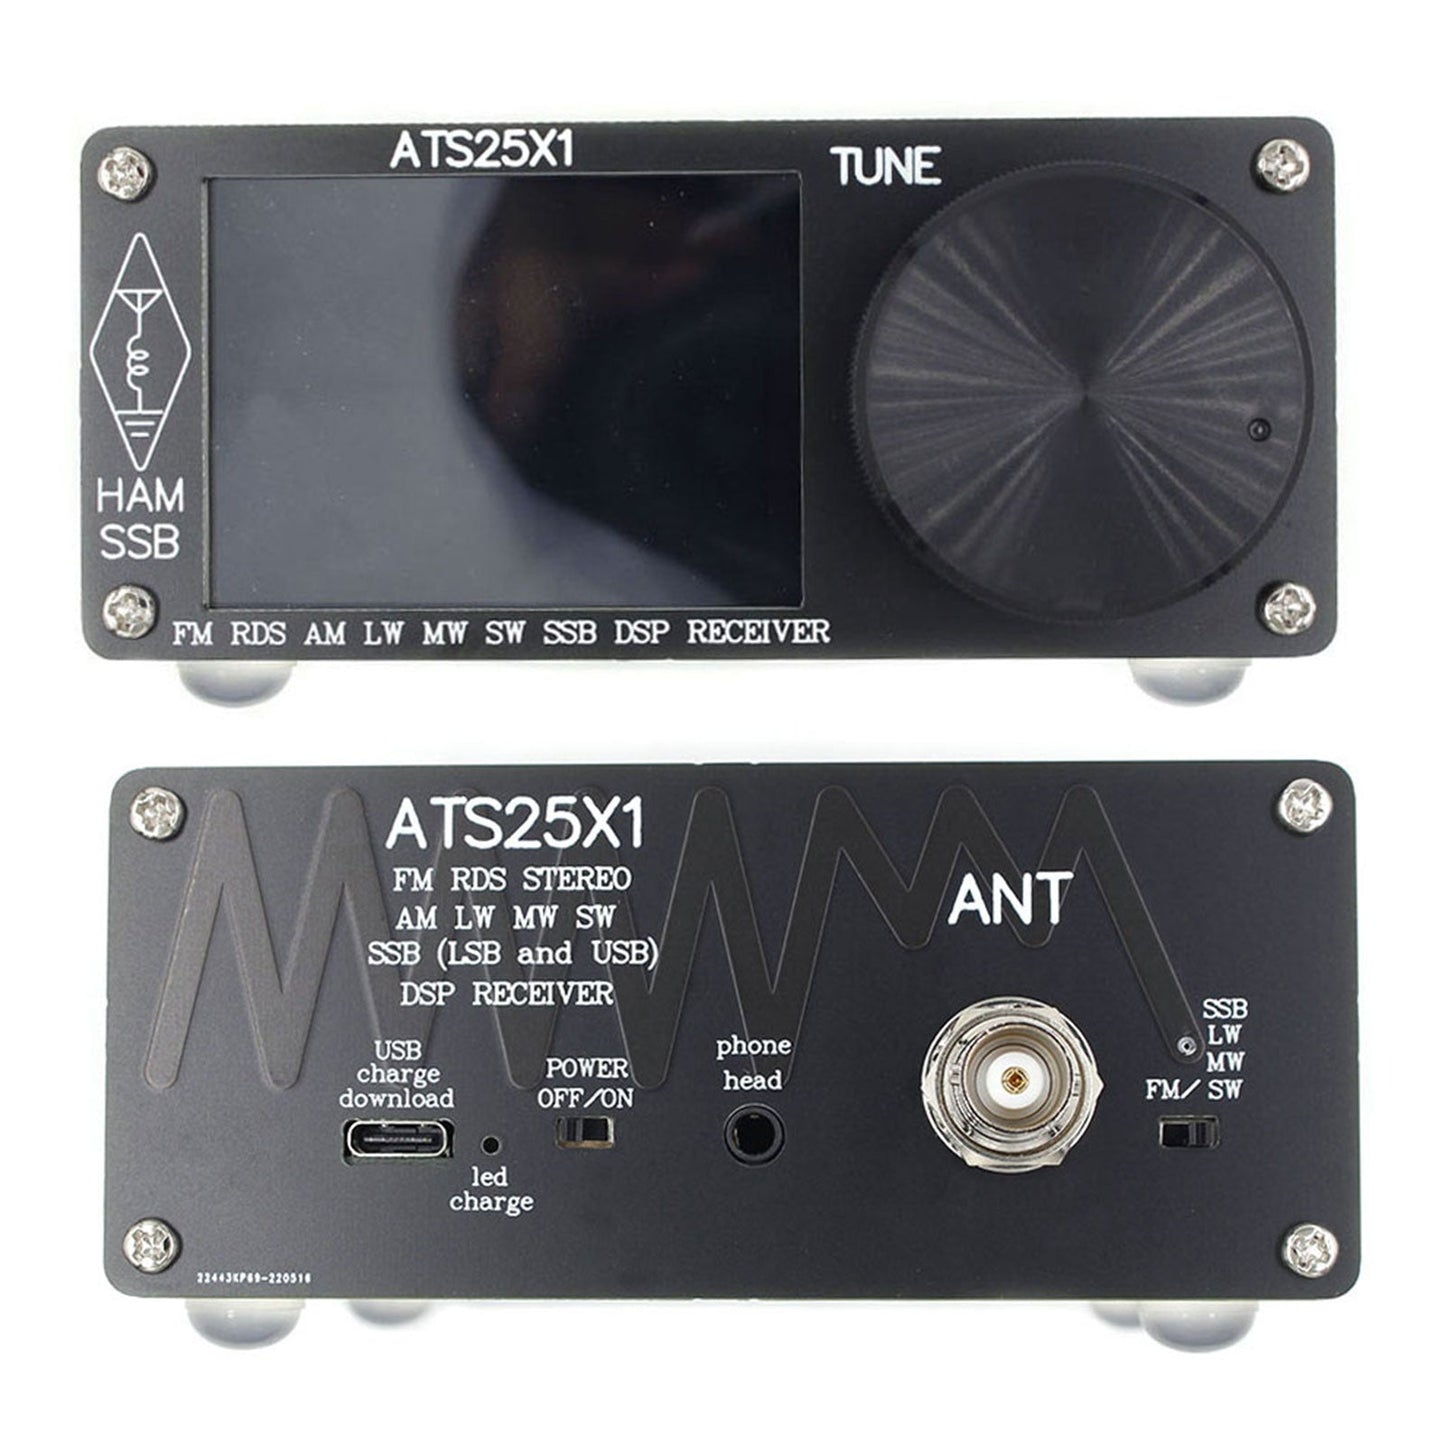 Nouveau récepteur radio DSP toutes bandes ATS-25X1 Si4732 FM LW MW SW avec écran tactile 2,4 pouces